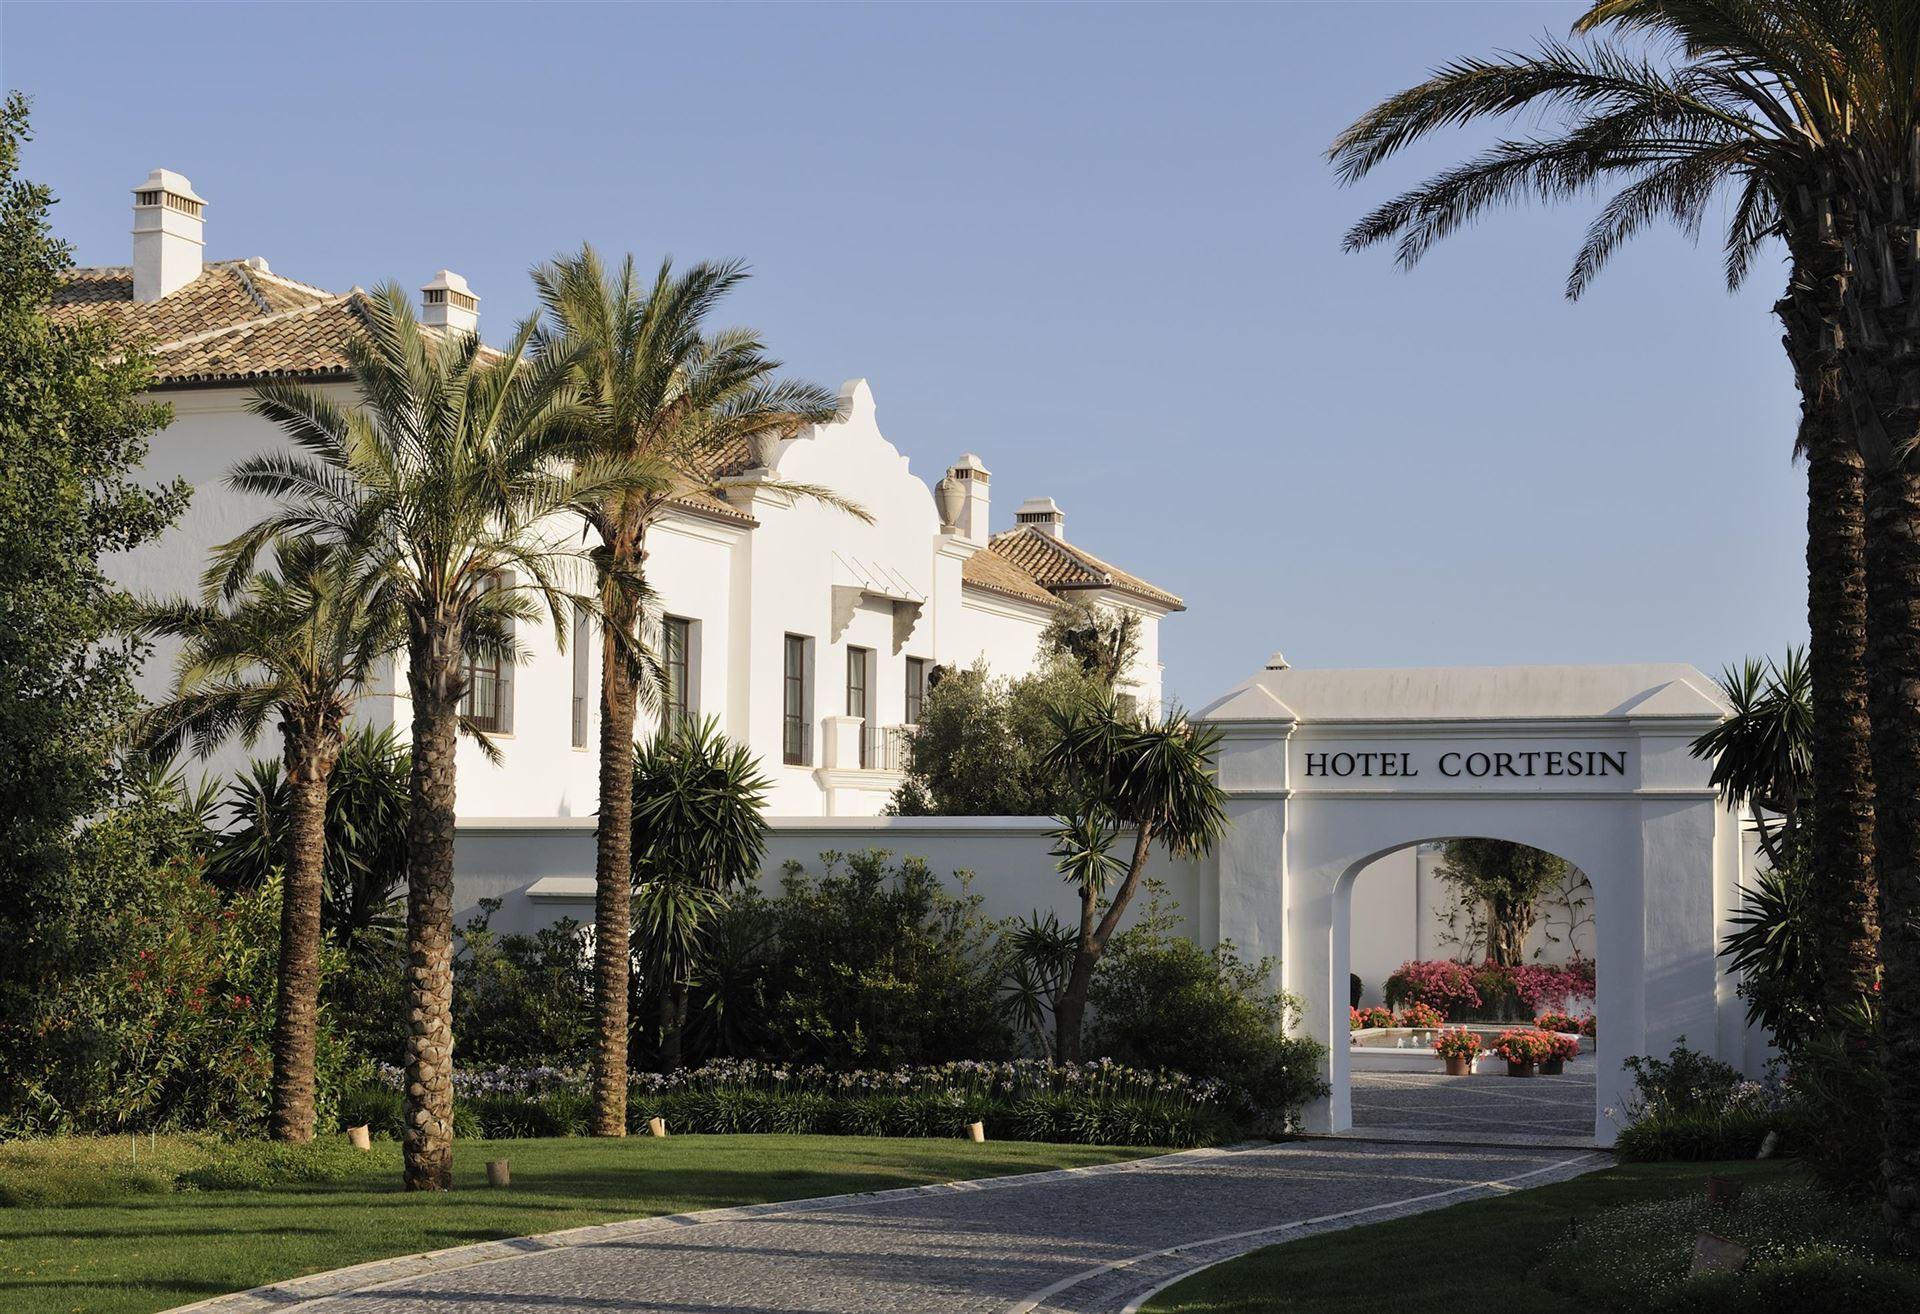 Finca Cortesin Hotel, Golf, Spa & Villas luxe hotel deals